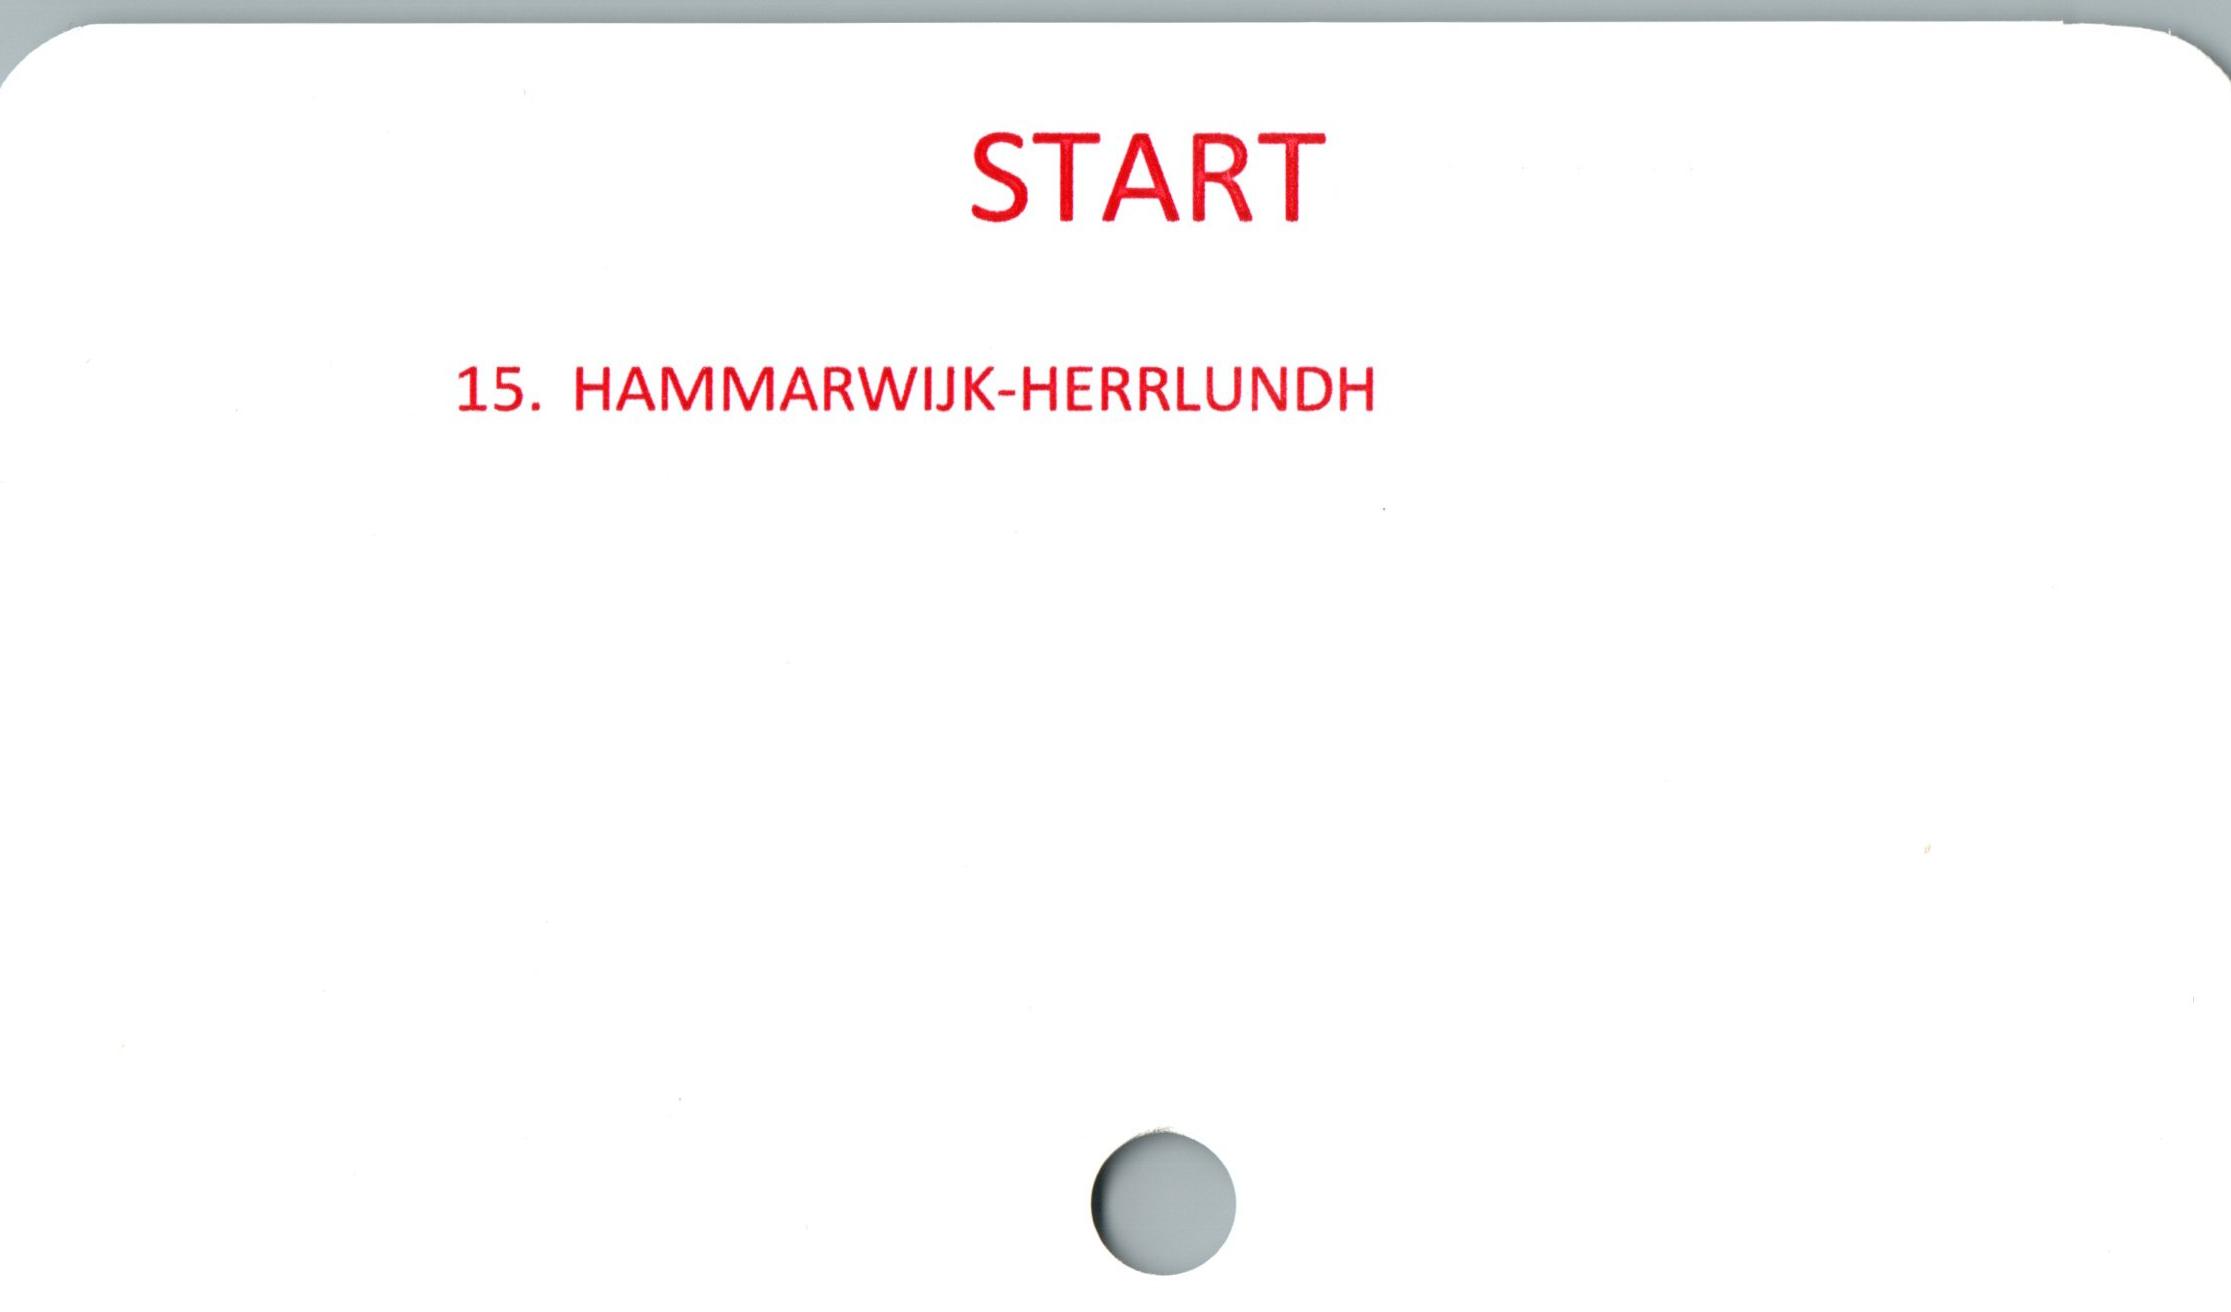  ﻿START

15. HAMMARWIJK-HERRLUNDH